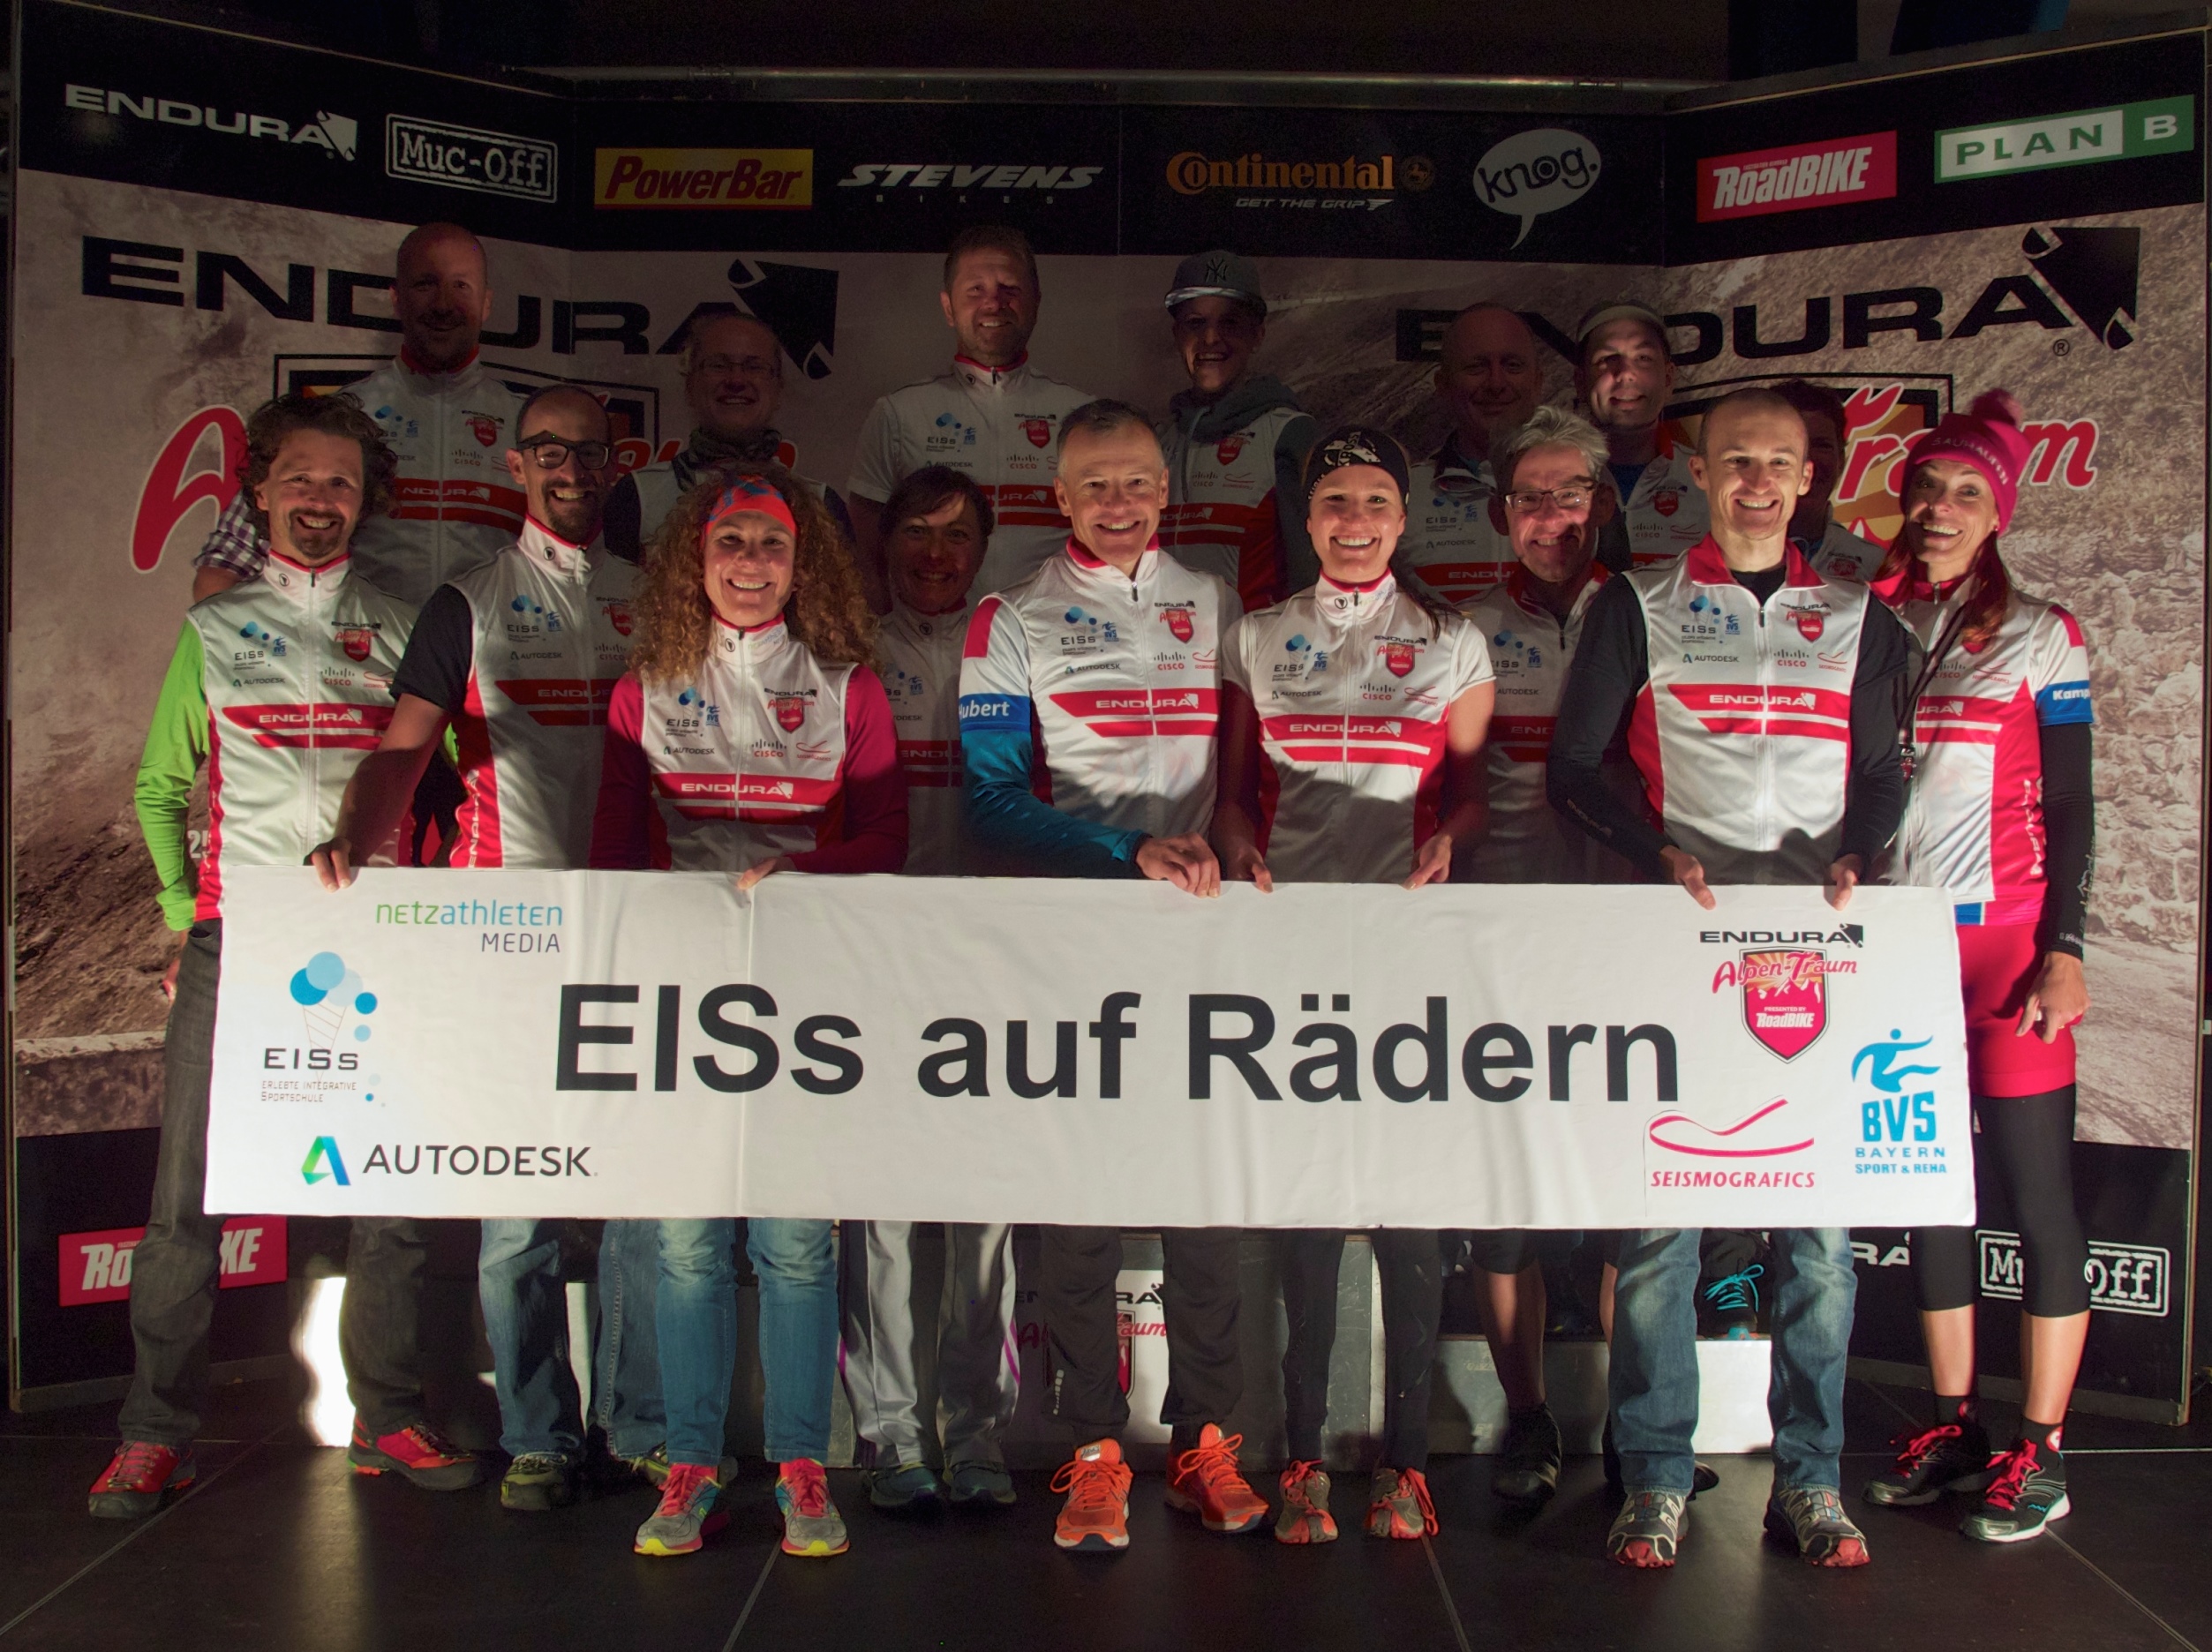 Para-Cyclistin Denise Schindler und ihr Team radeln für den guten Zweck - EISs auf Rädern 3.0